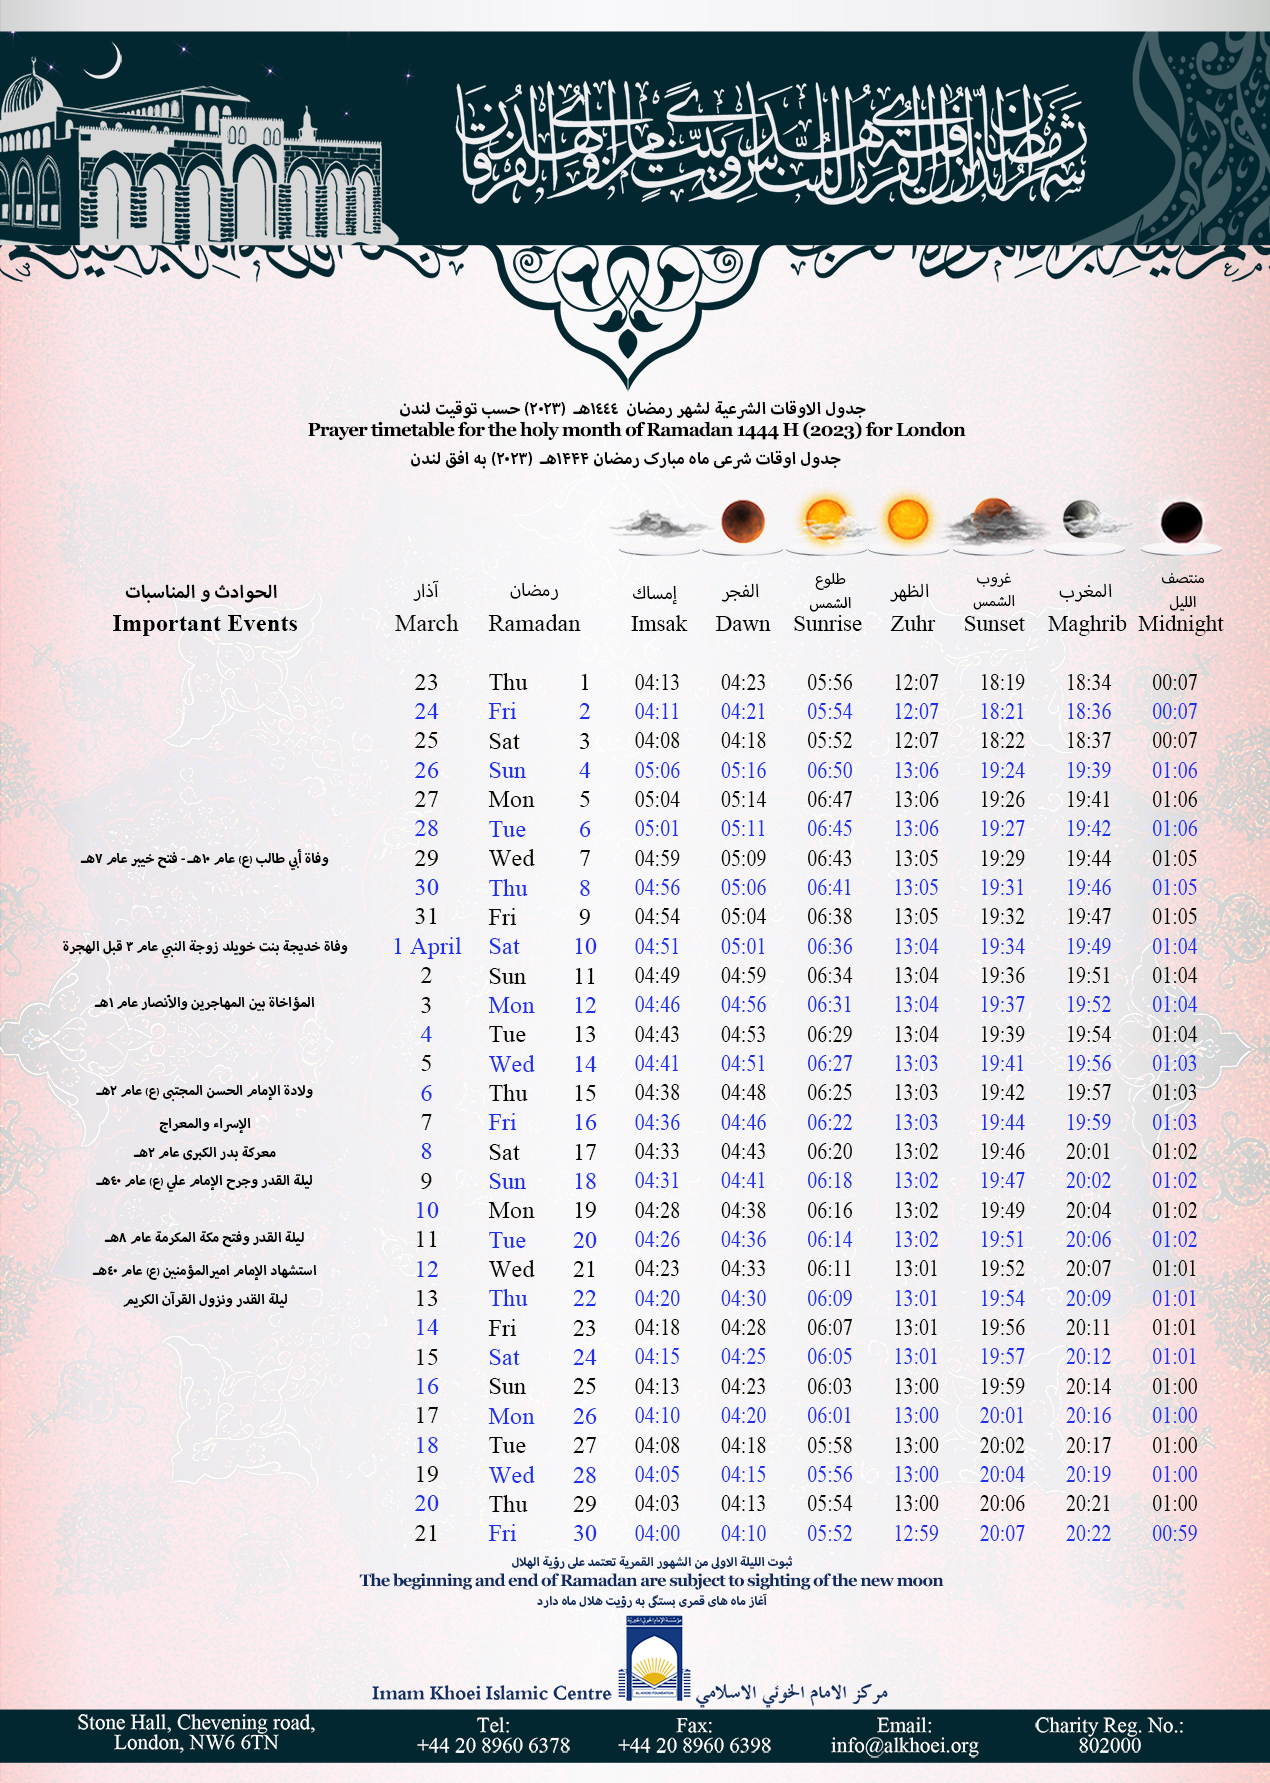 جدول الاوقات الشرعية لشهر رمضان ١٤٤٤هـ (٢٠٢٣) حسب توقيت لندن